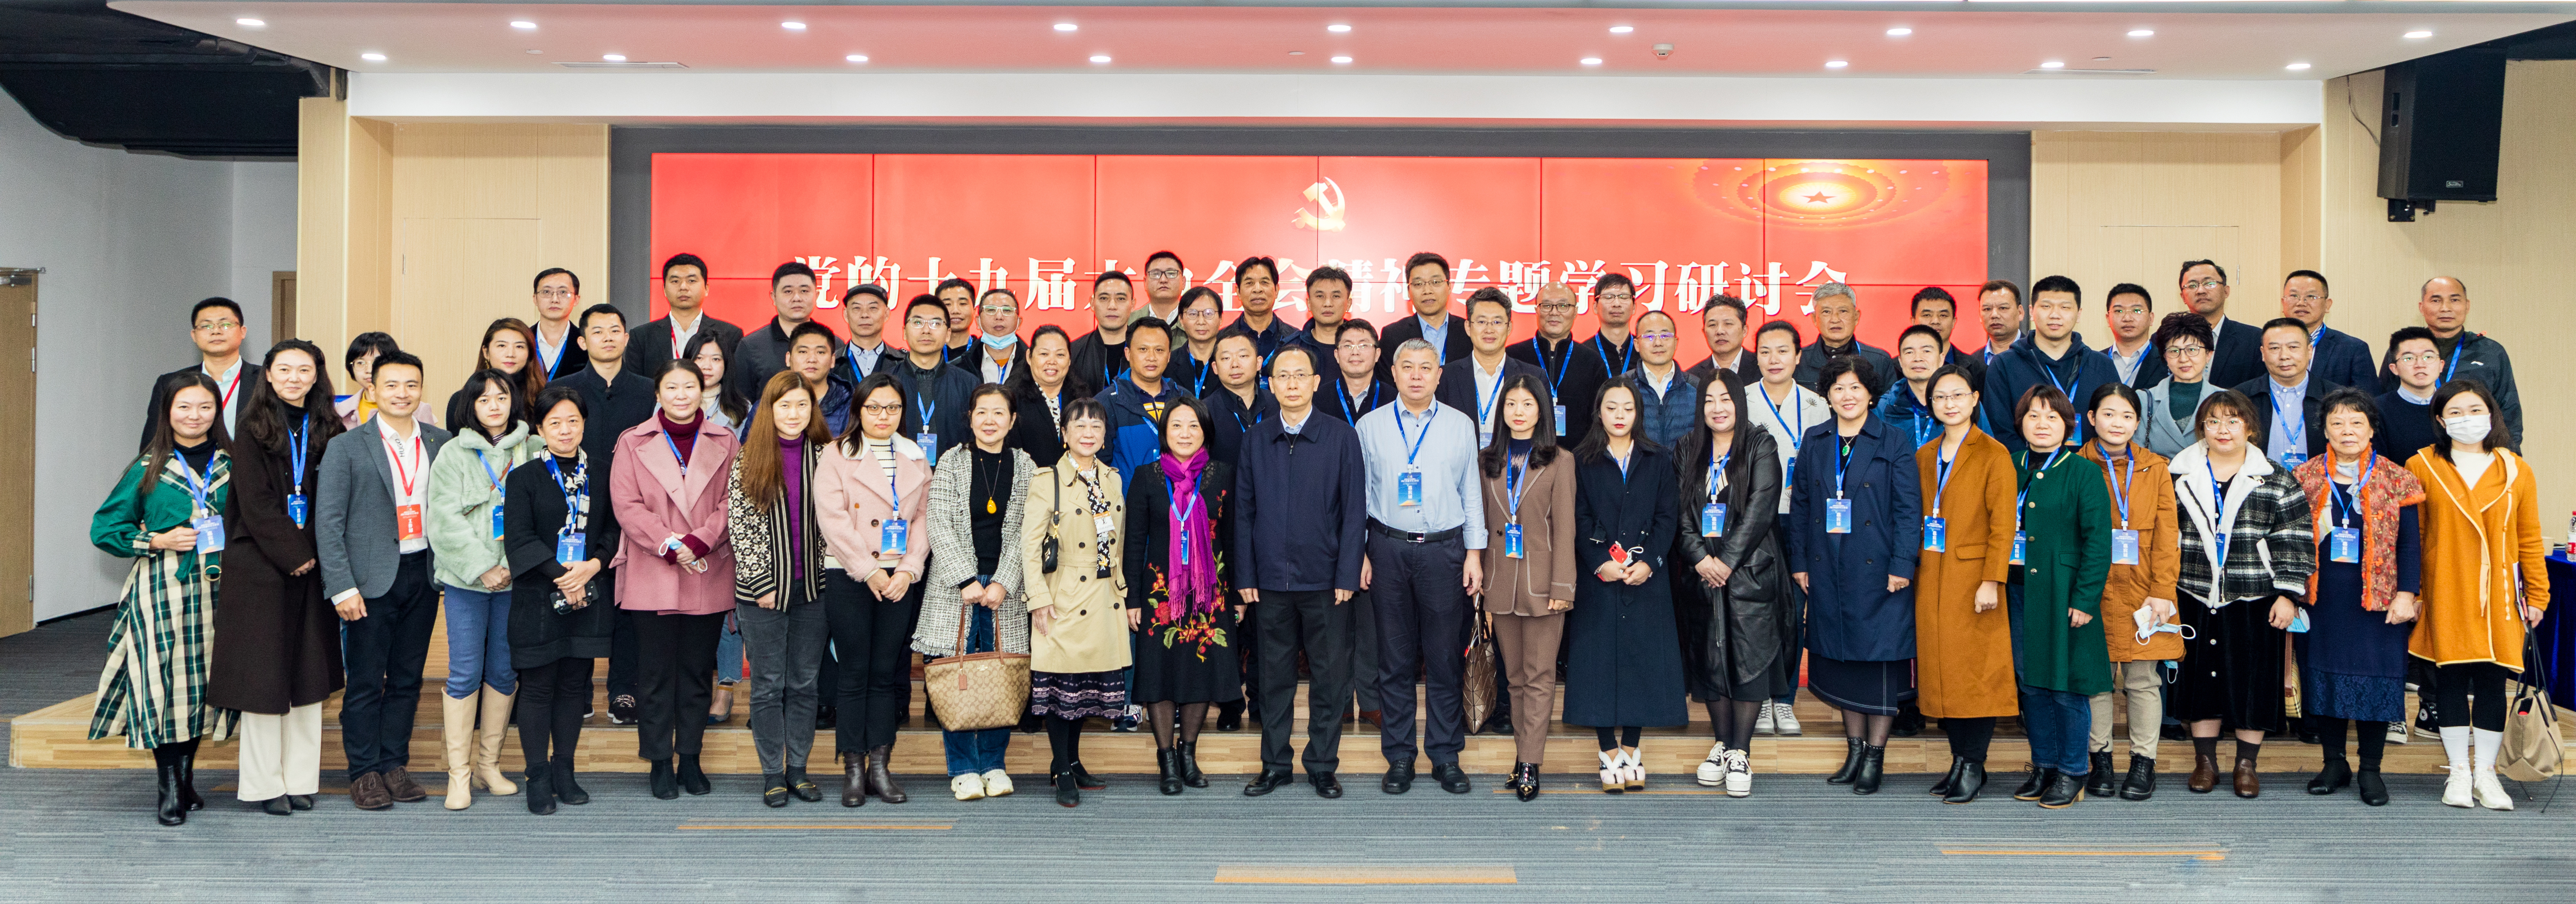 深圳市物聯網產業協會承辦的“深圳市科學技術協會2021年度學會工作會議”成功召開